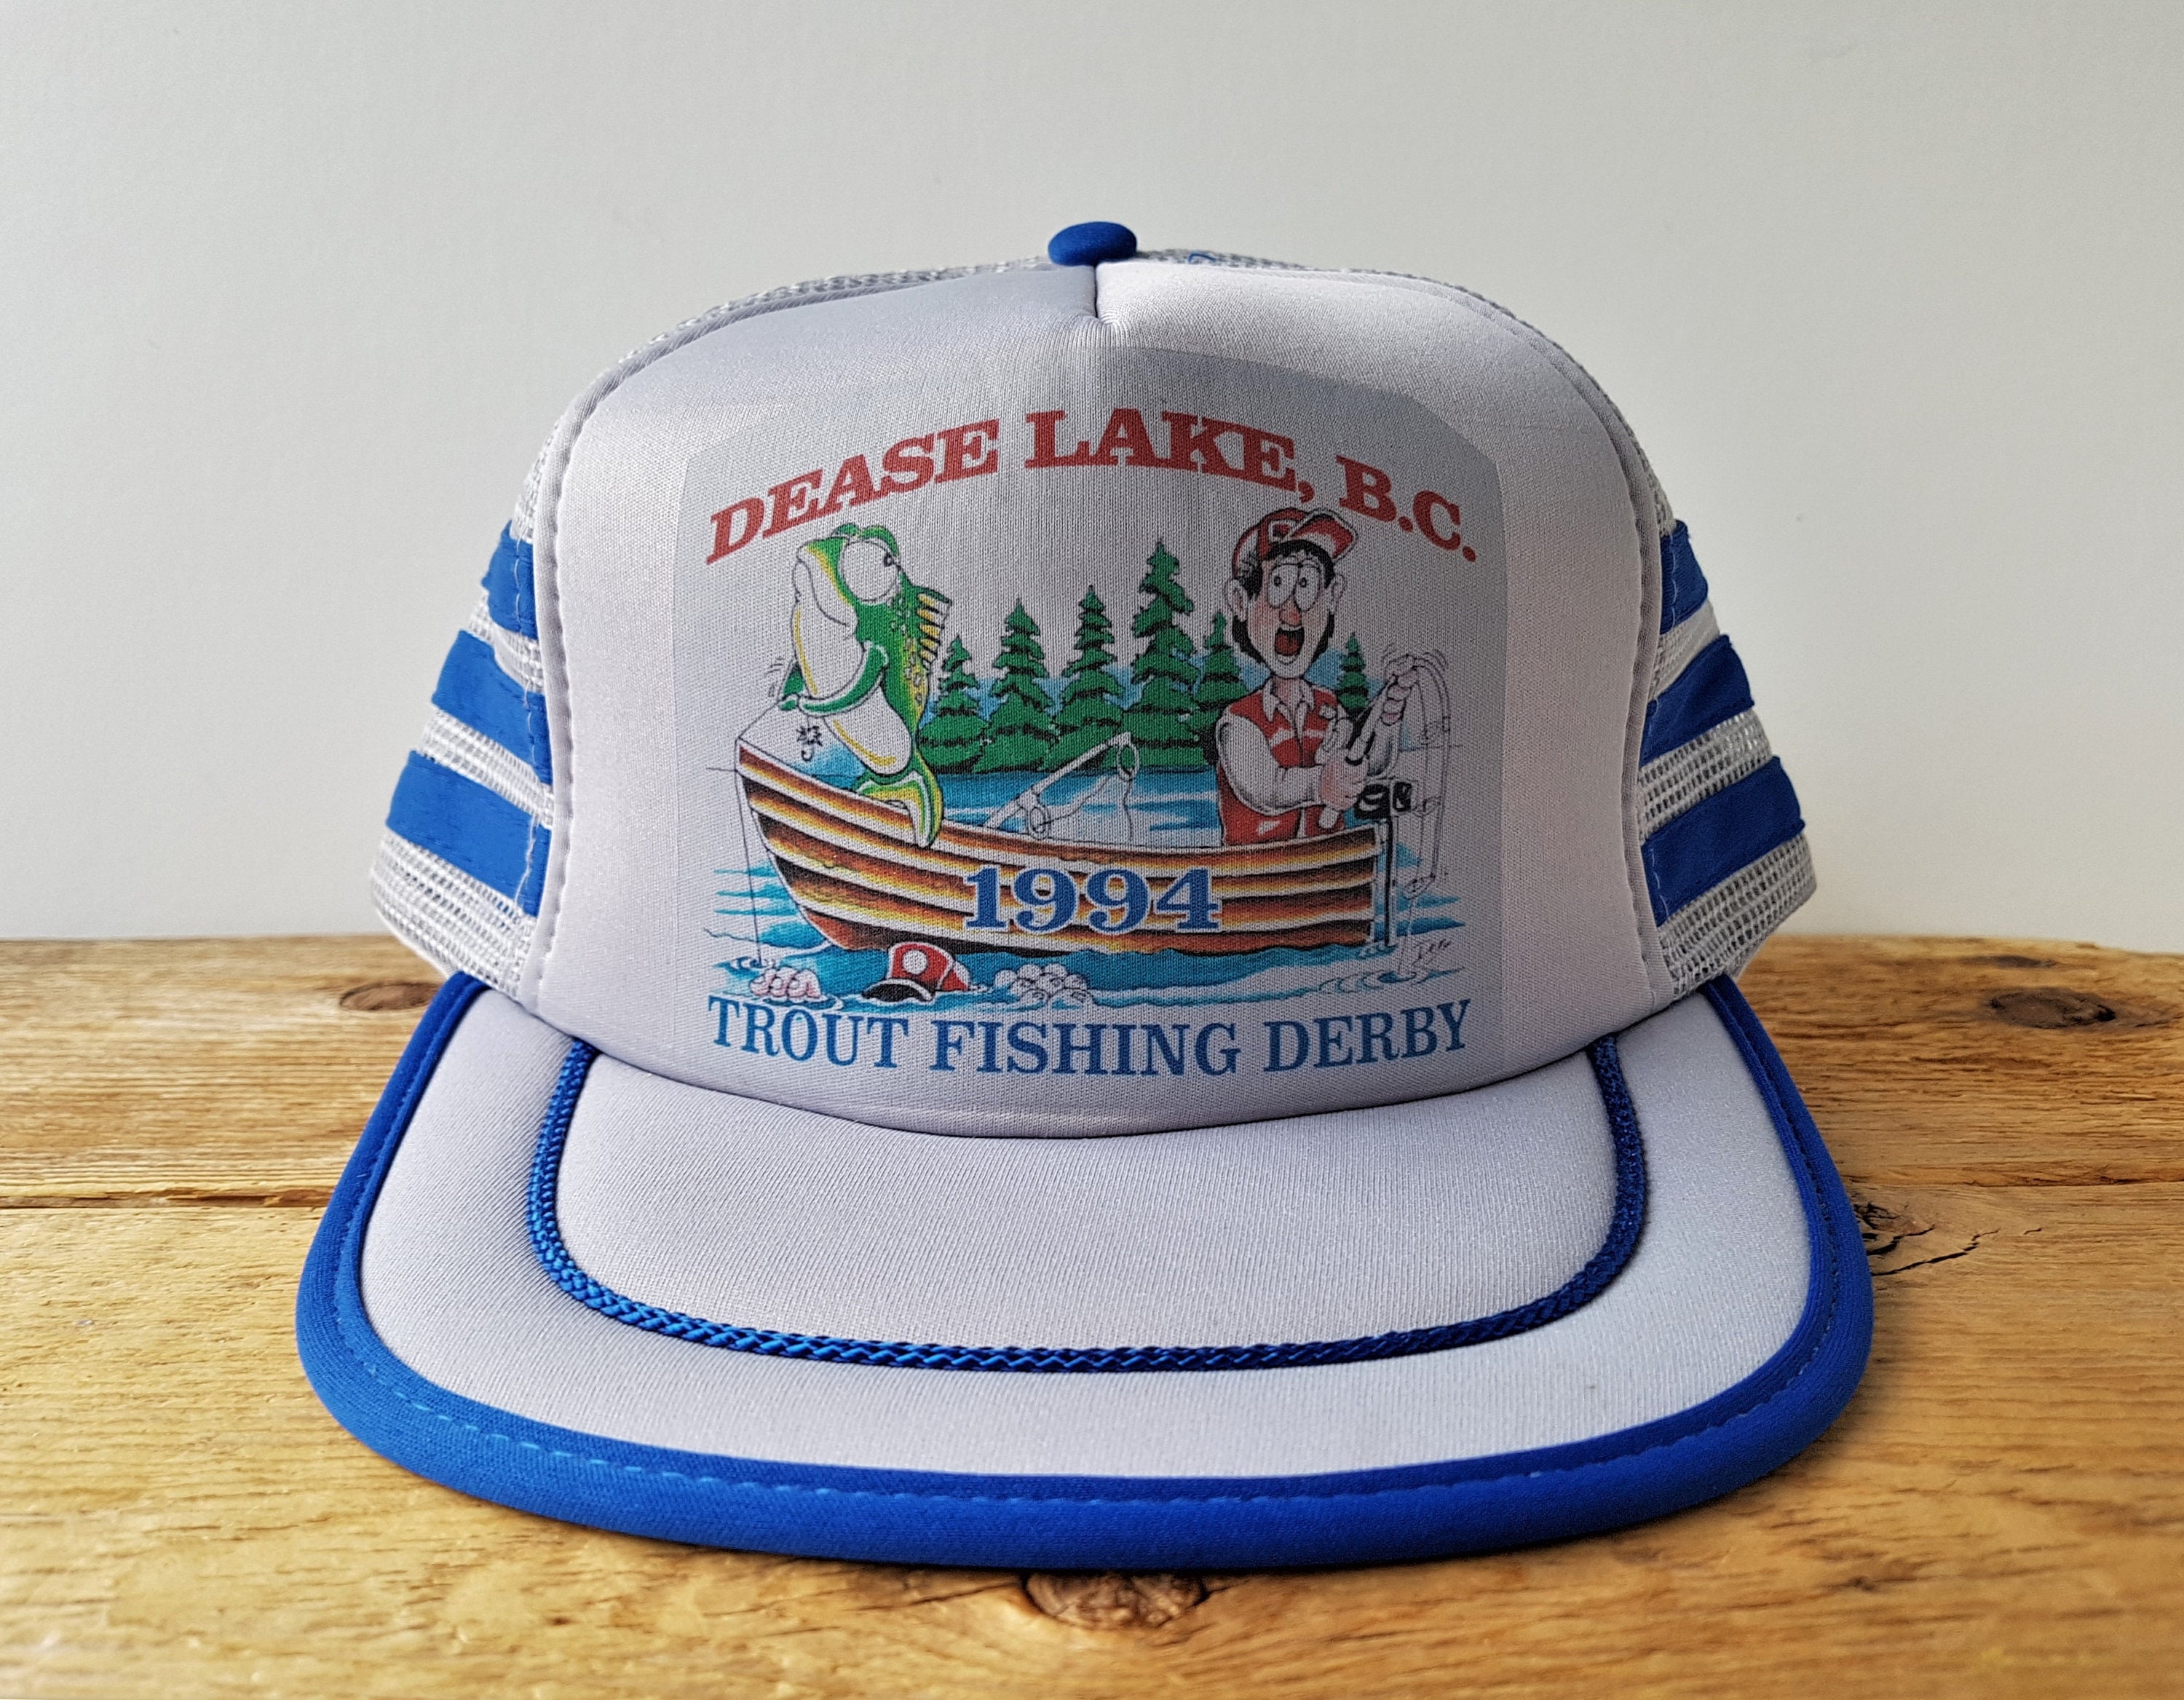 Vintage 90s DEASE LAKE B.C. 1994 Trout Fishing Derby Trucker Hat 3 Stripe  Snapback Fisherman Funny Graphic Baseball Cap Headline Headwear 